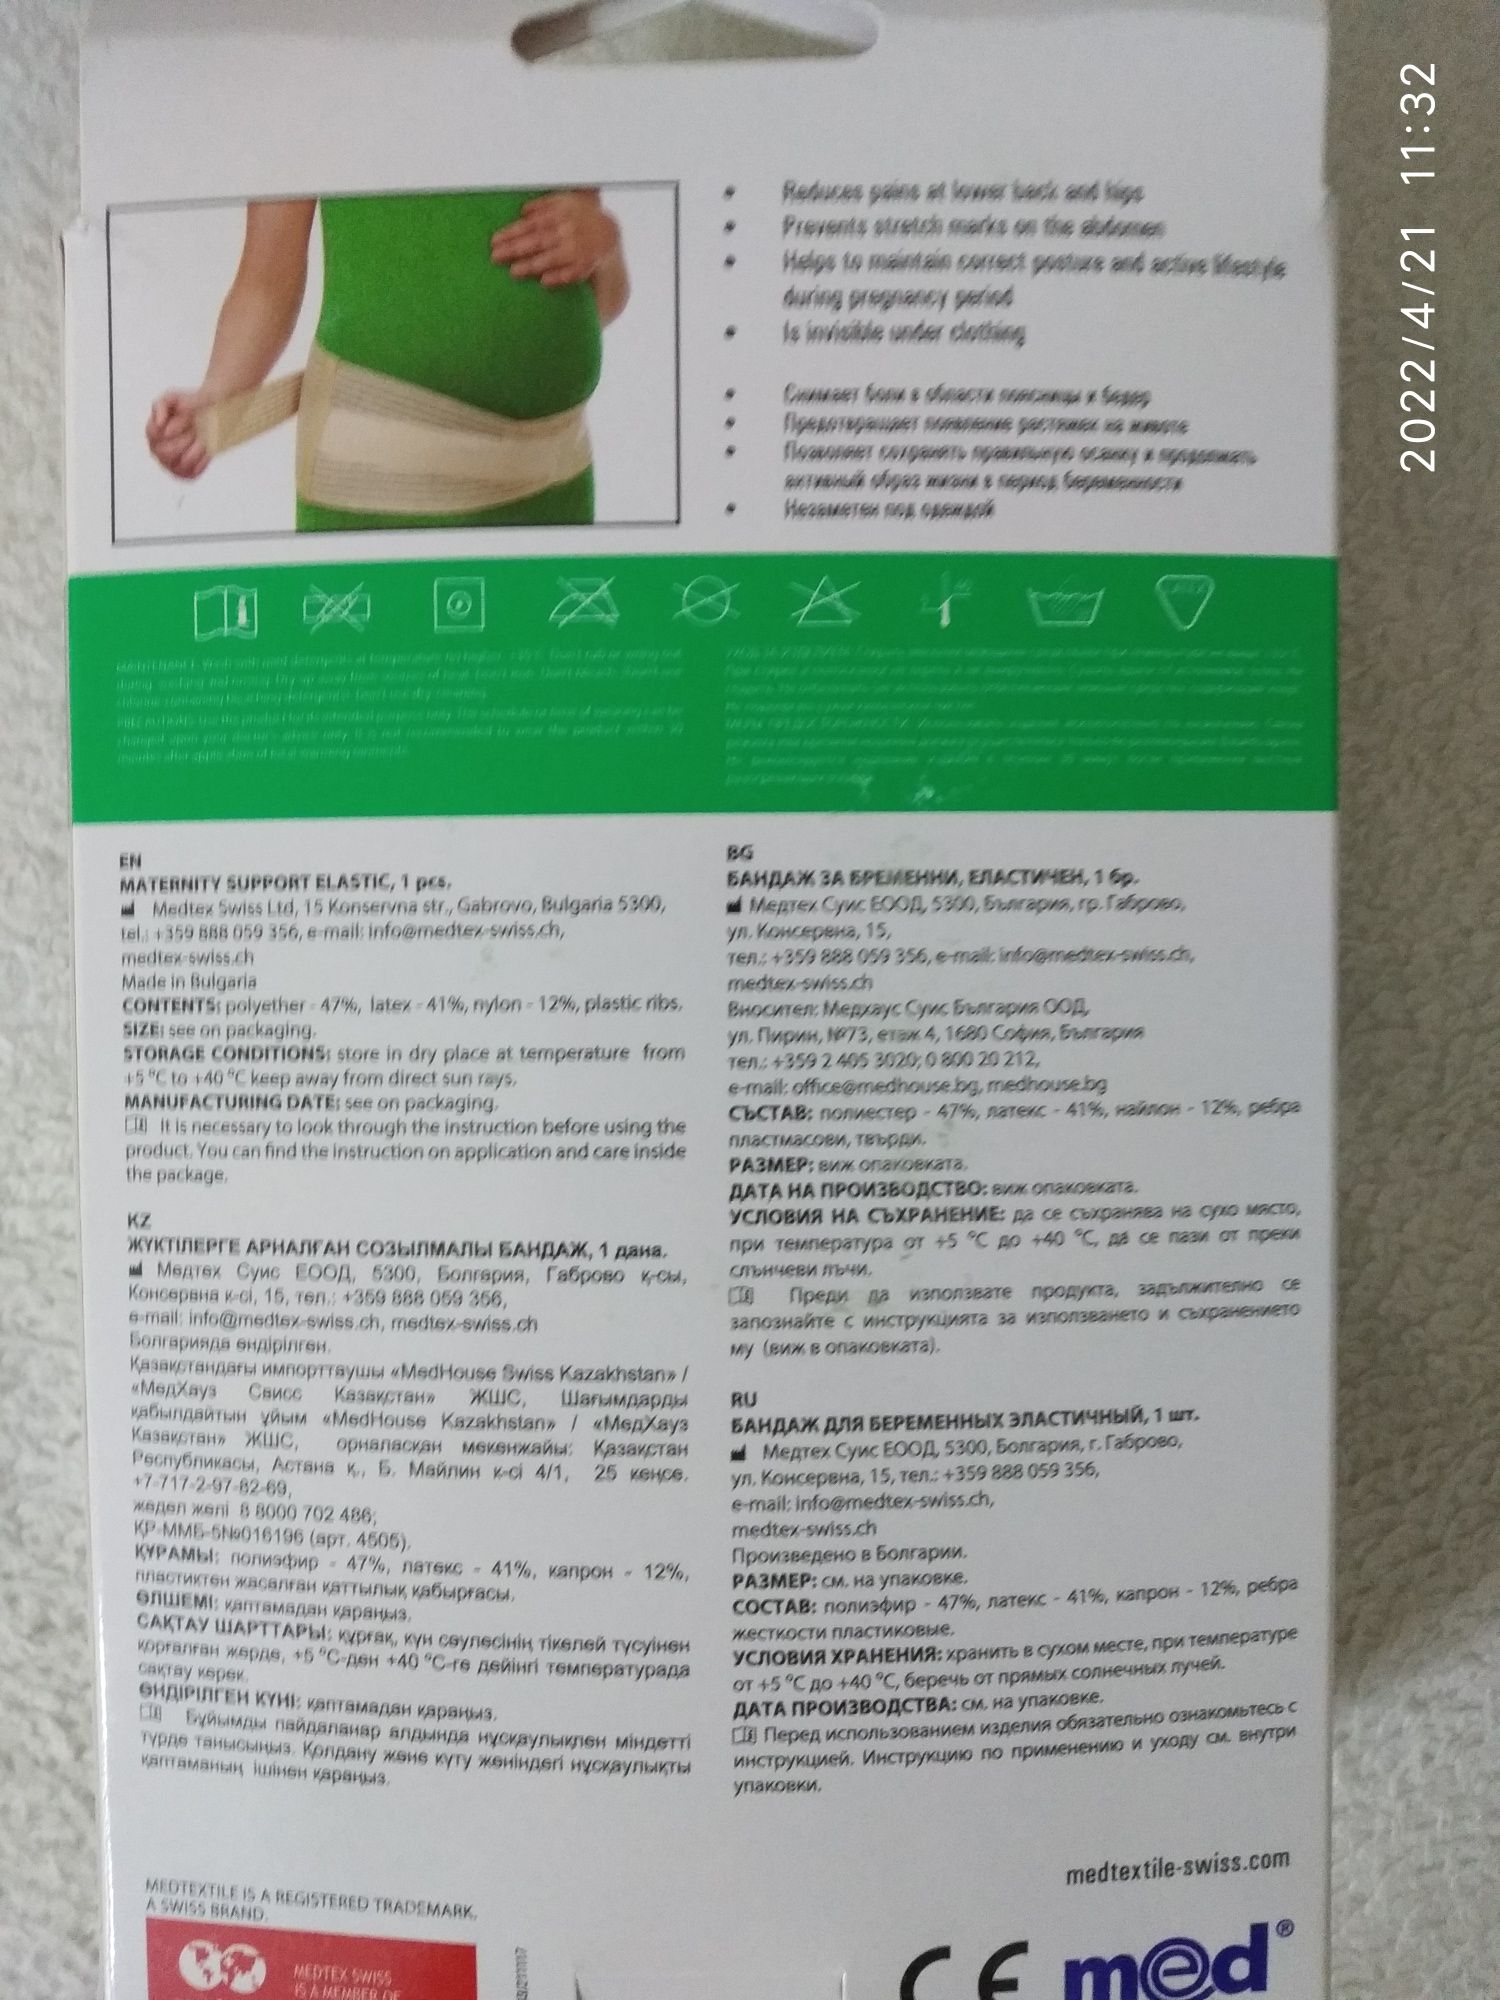 Продам бандаж для беременных